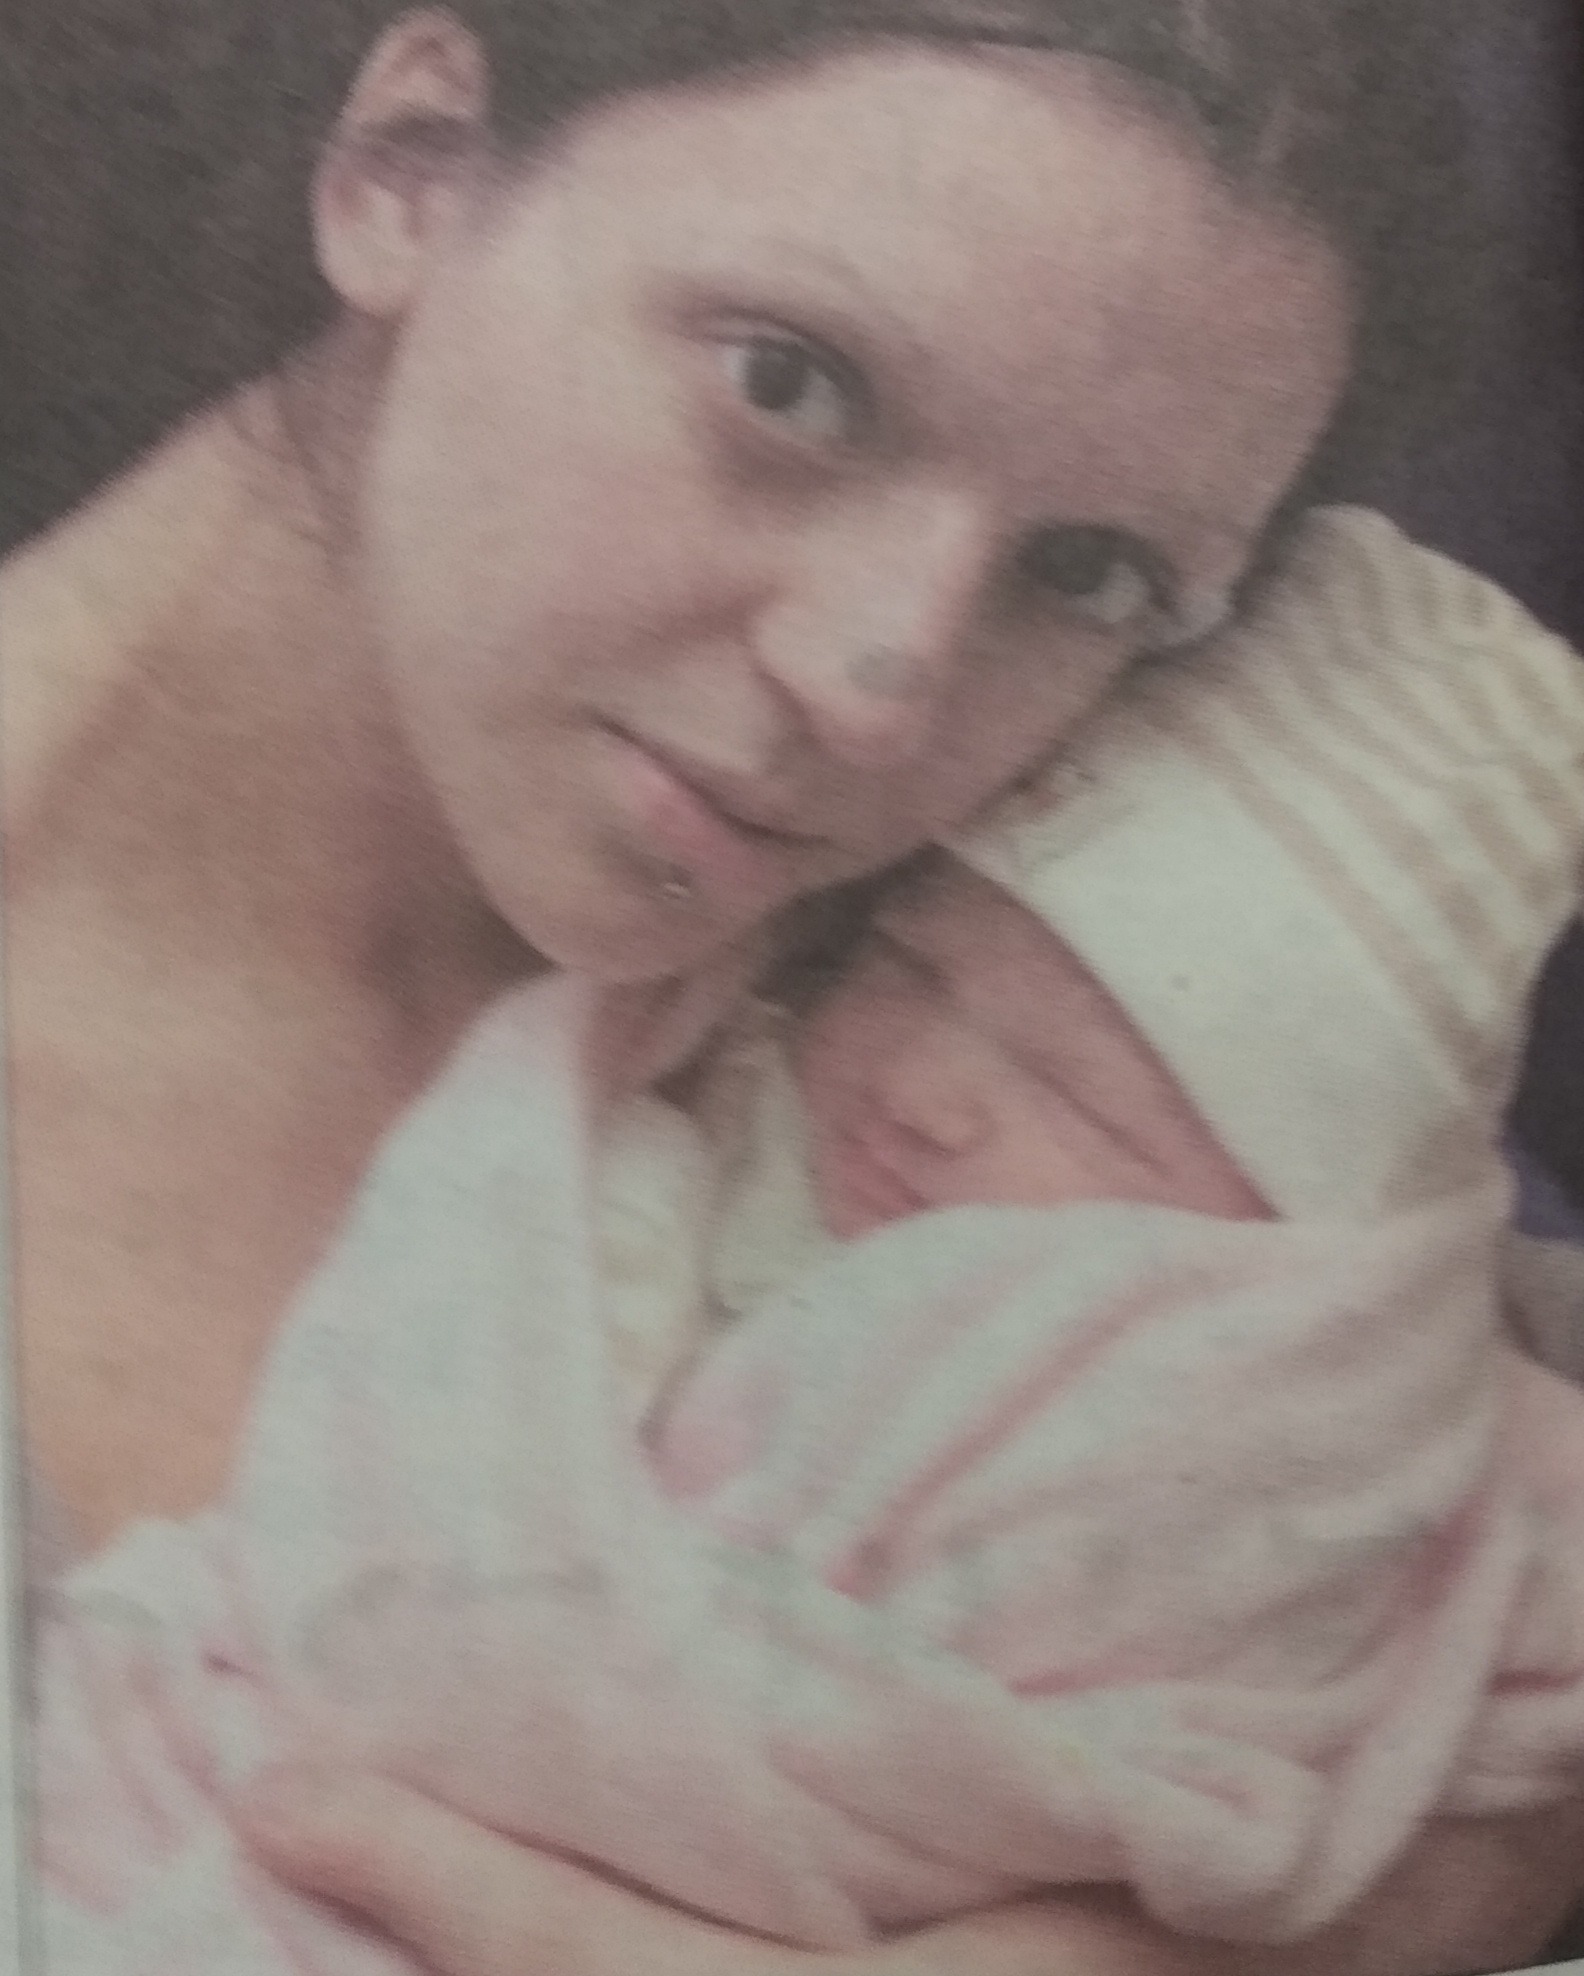 Leah Bowley and baby Shayia